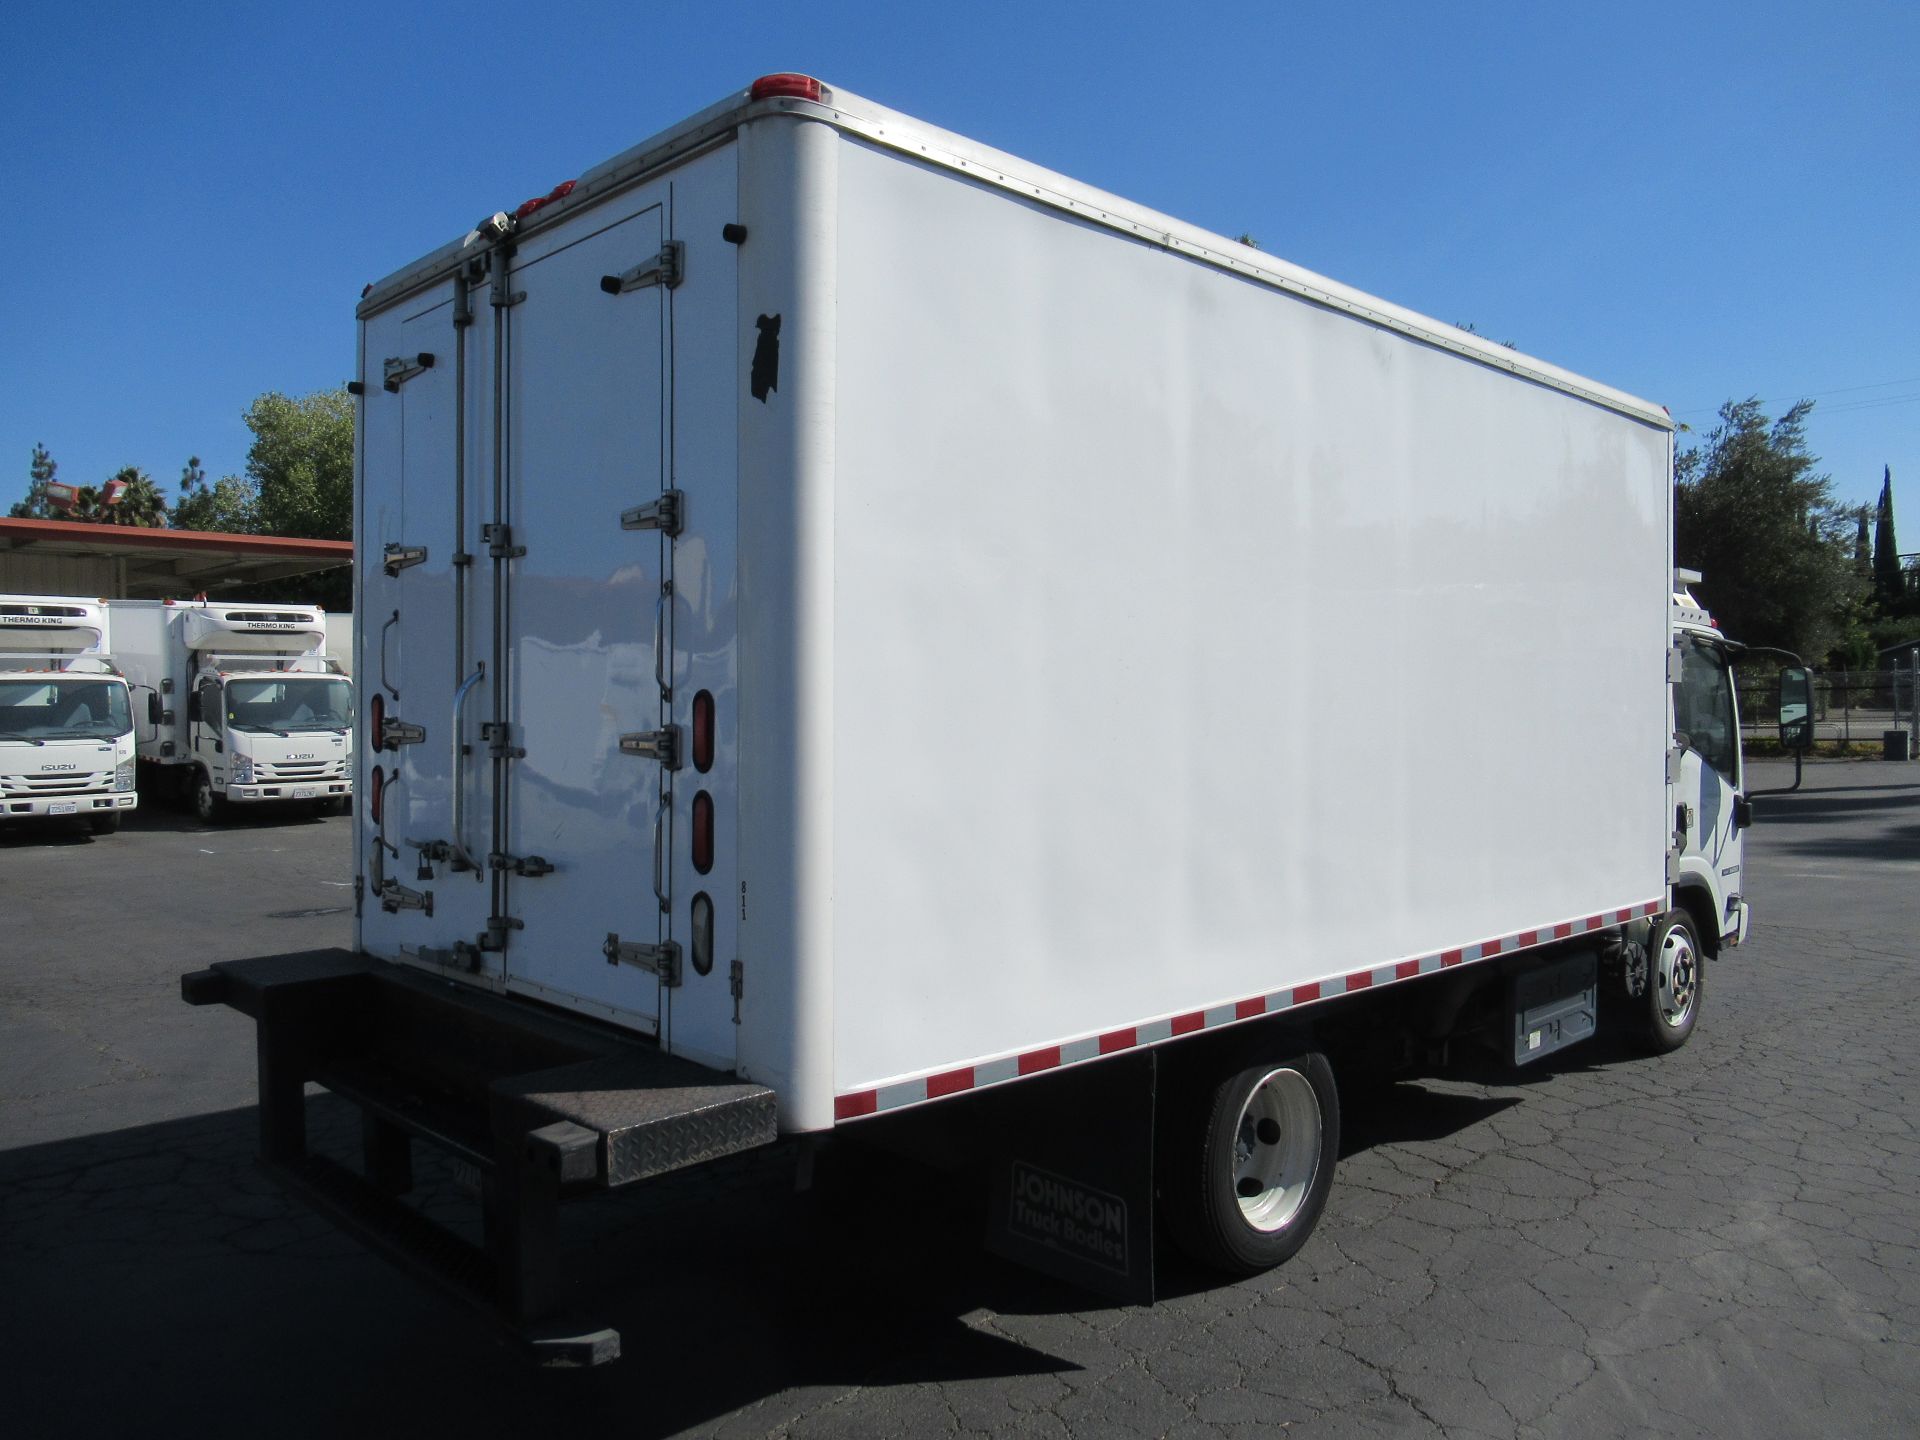 2013 Isuzu refrigerated truck - Image 3 of 10